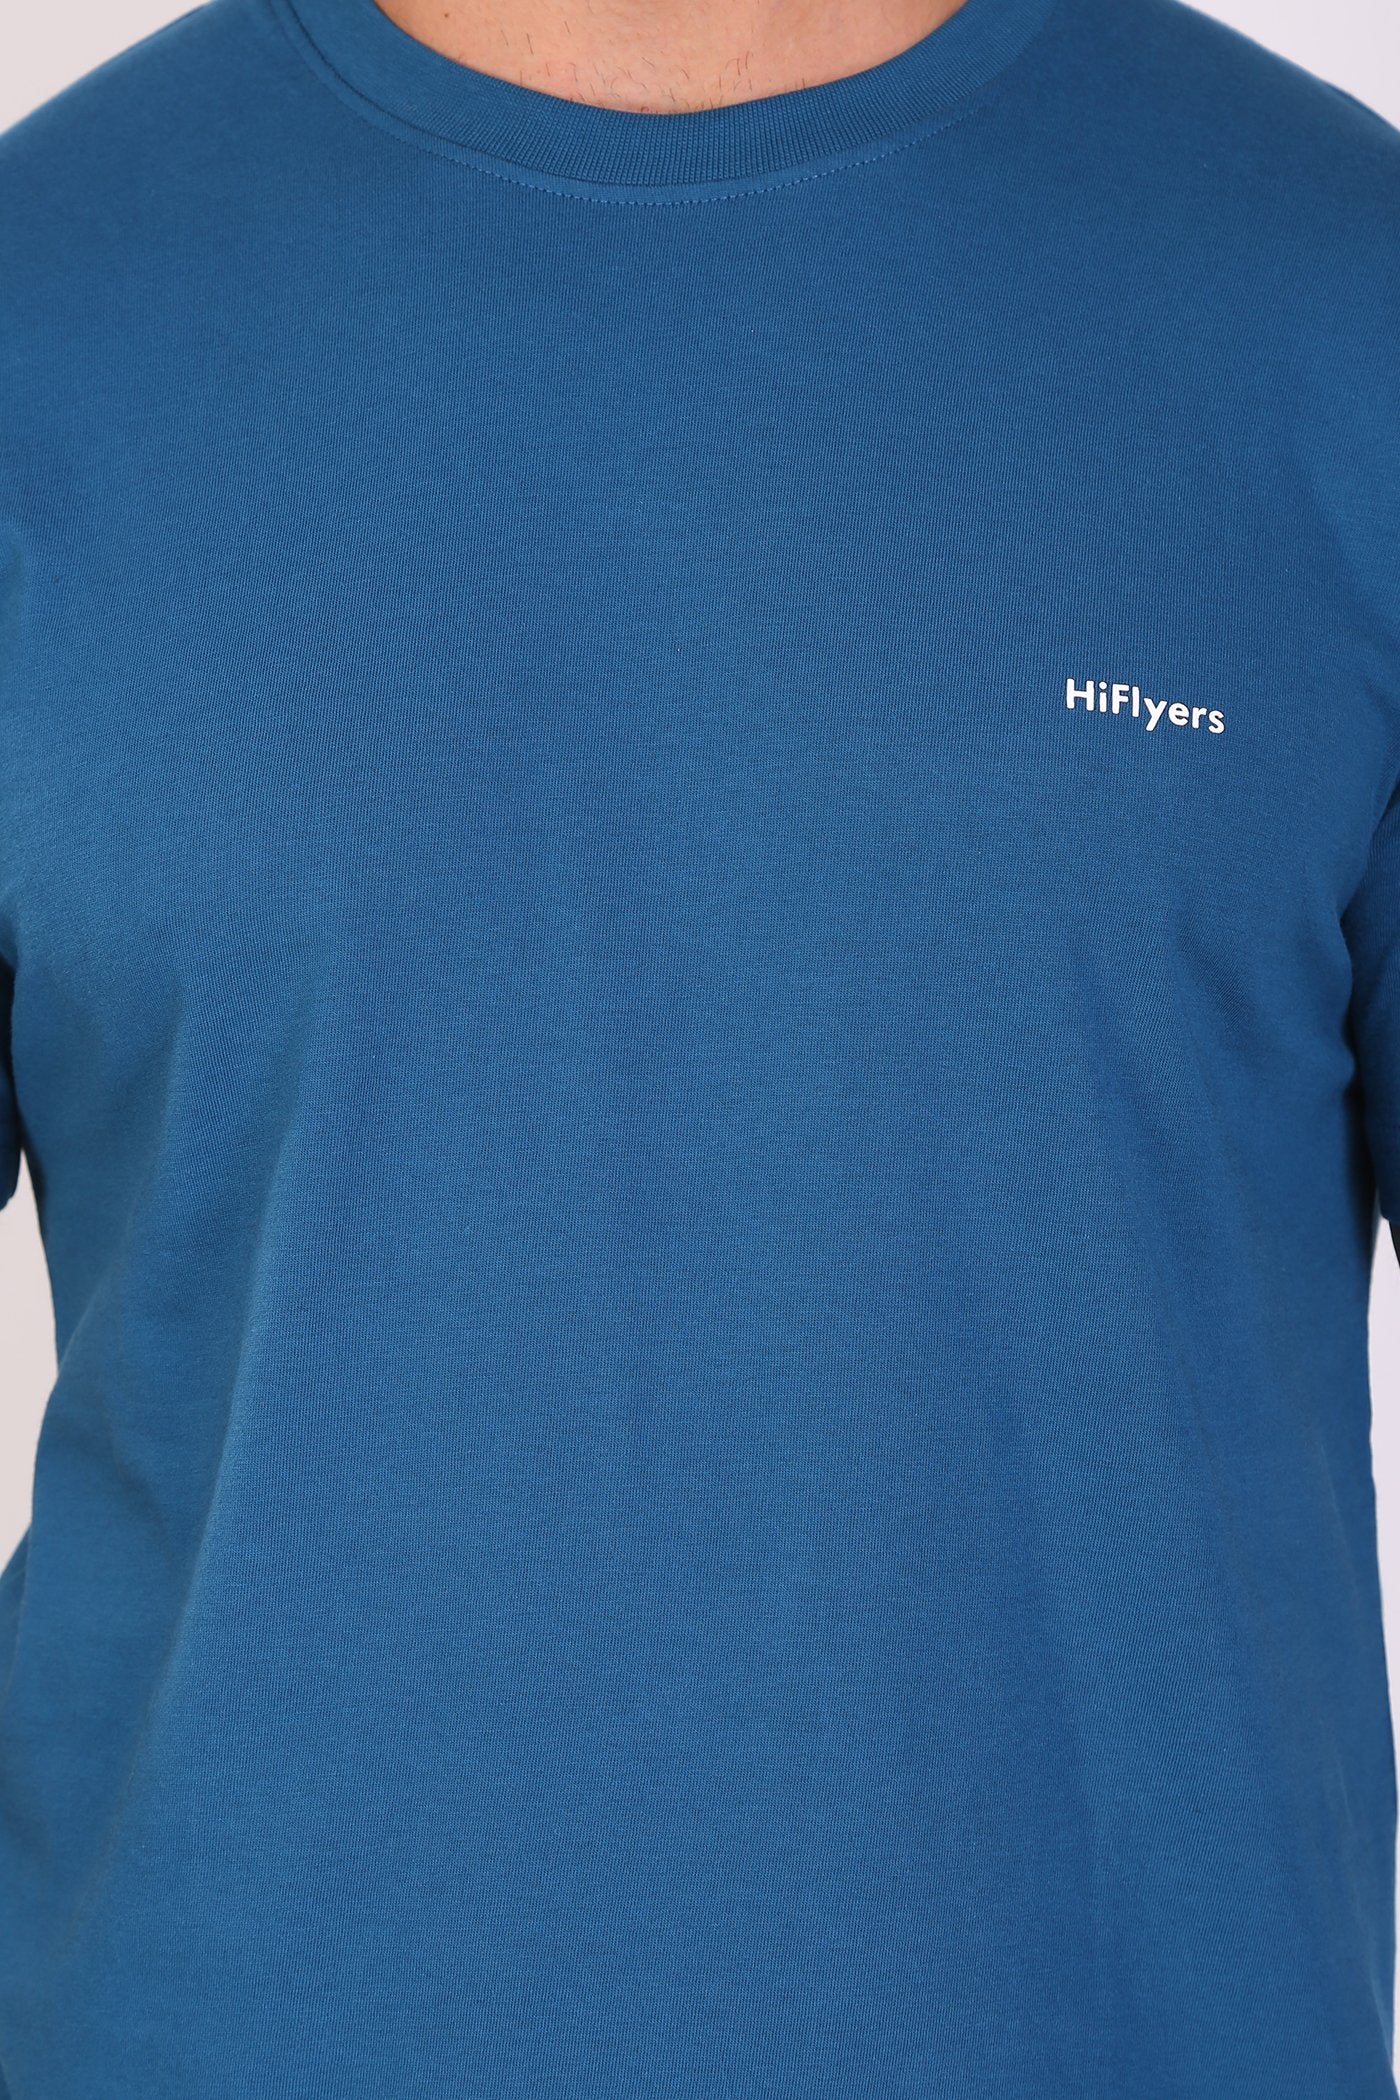 Hiflyers Men Slim Fit Solid Pack Of 2 Premium RN T-Shirt Deep Atlantic::Red